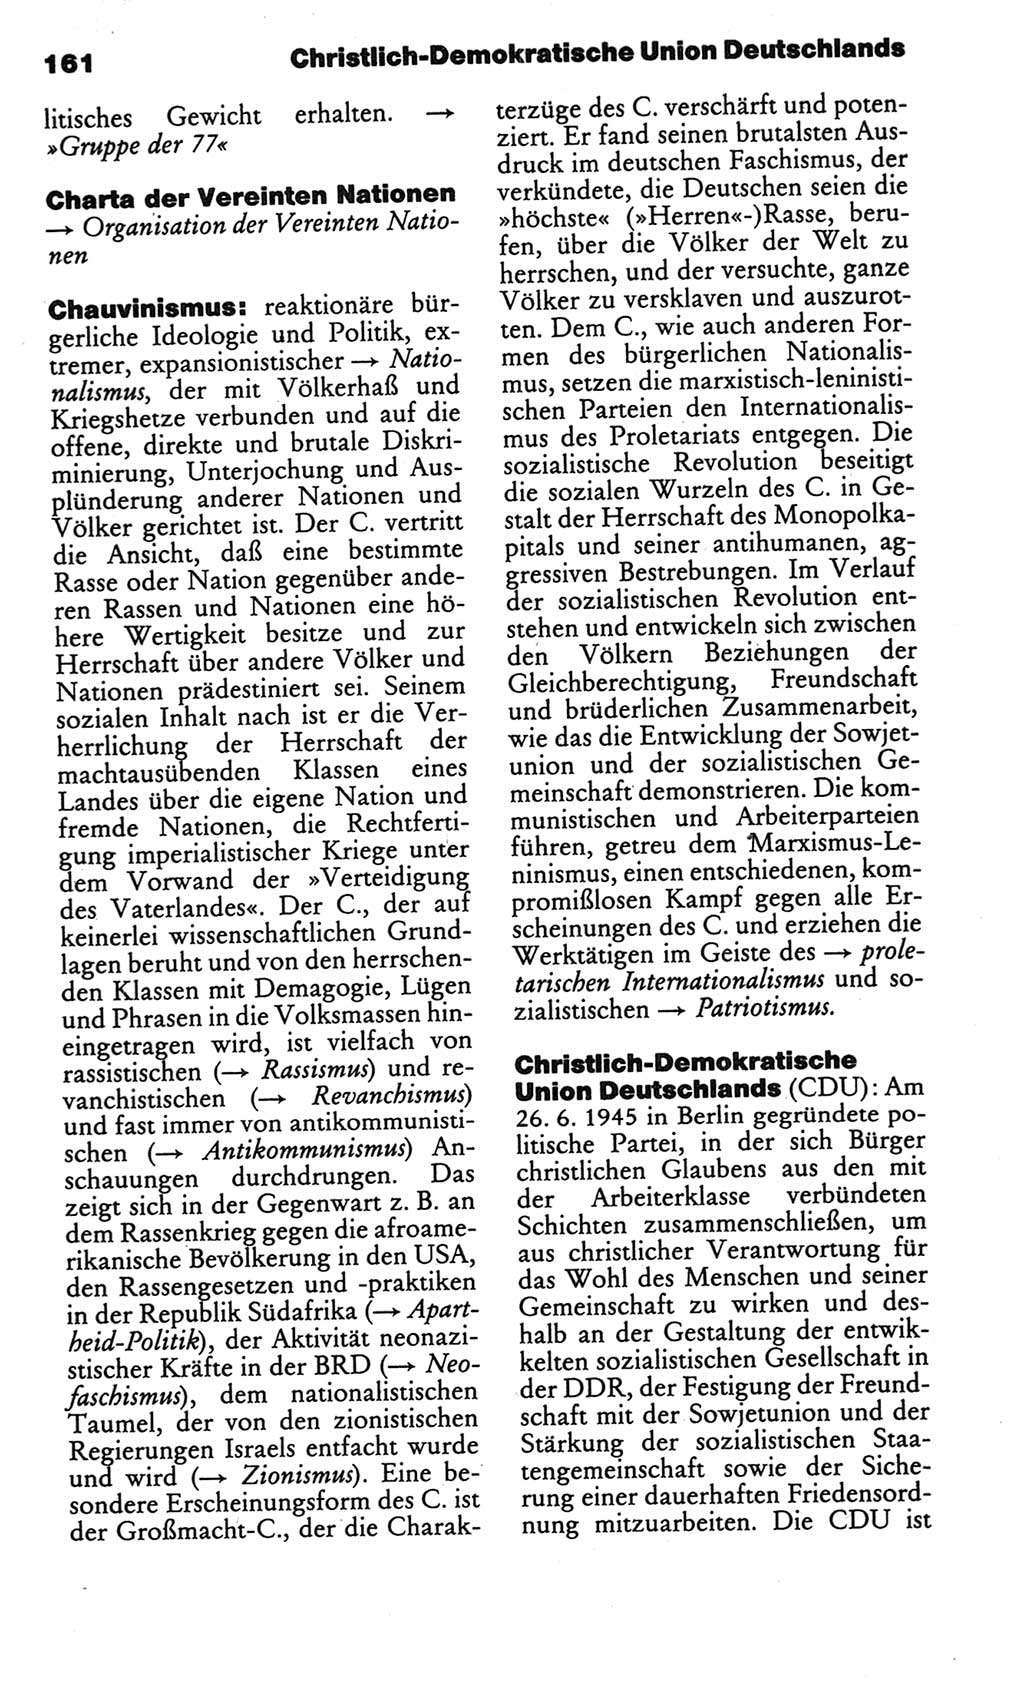 Kleines politisches Wörterbuch [Deutsche Demokratische Republik (DDR)] 1986, Seite 161 (Kl. pol. Wb. DDR 1986, S. 161)